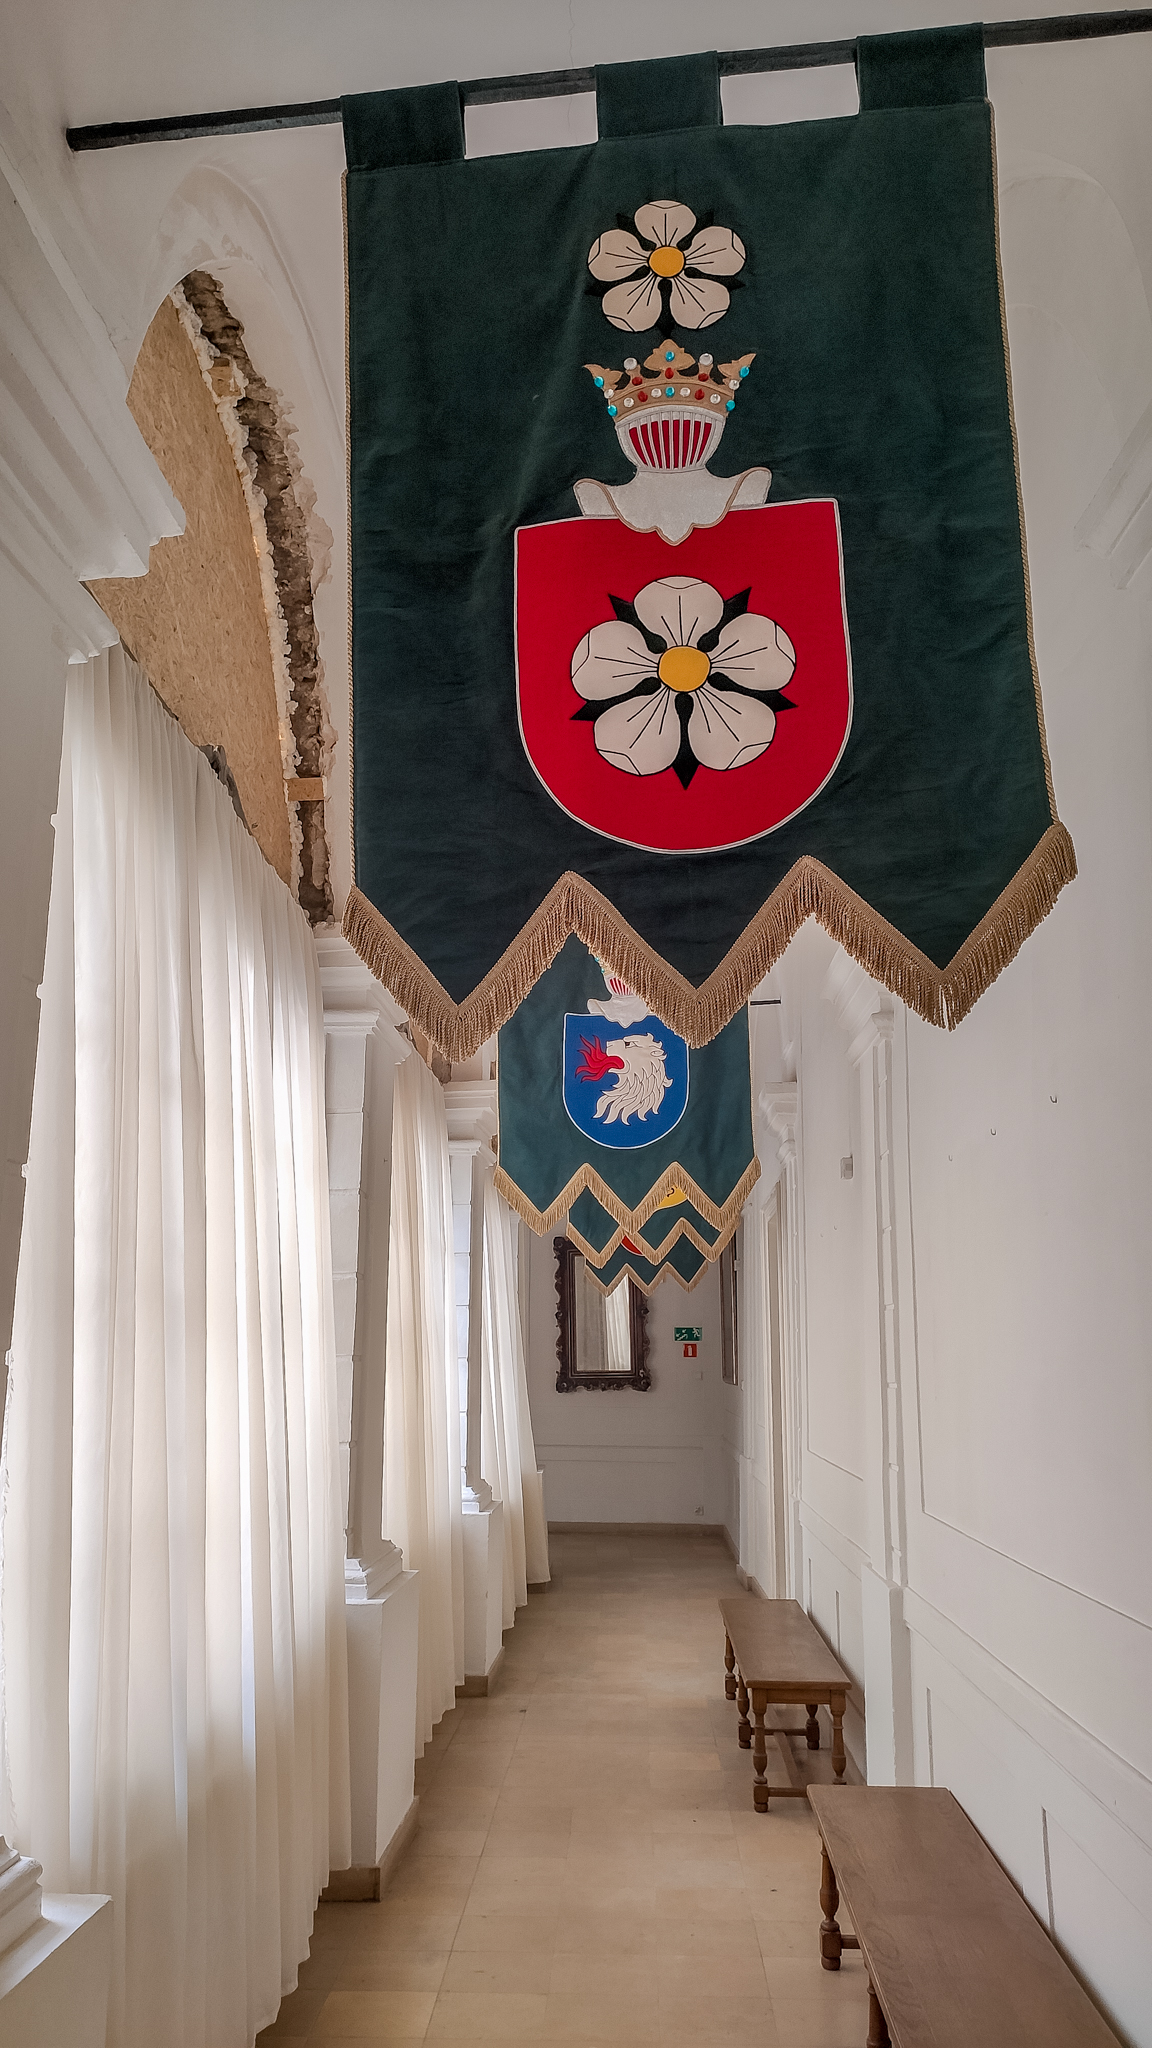 Herby rodziny uwieszone na wąskim korytarzu Pałacu w Kurozwękach.